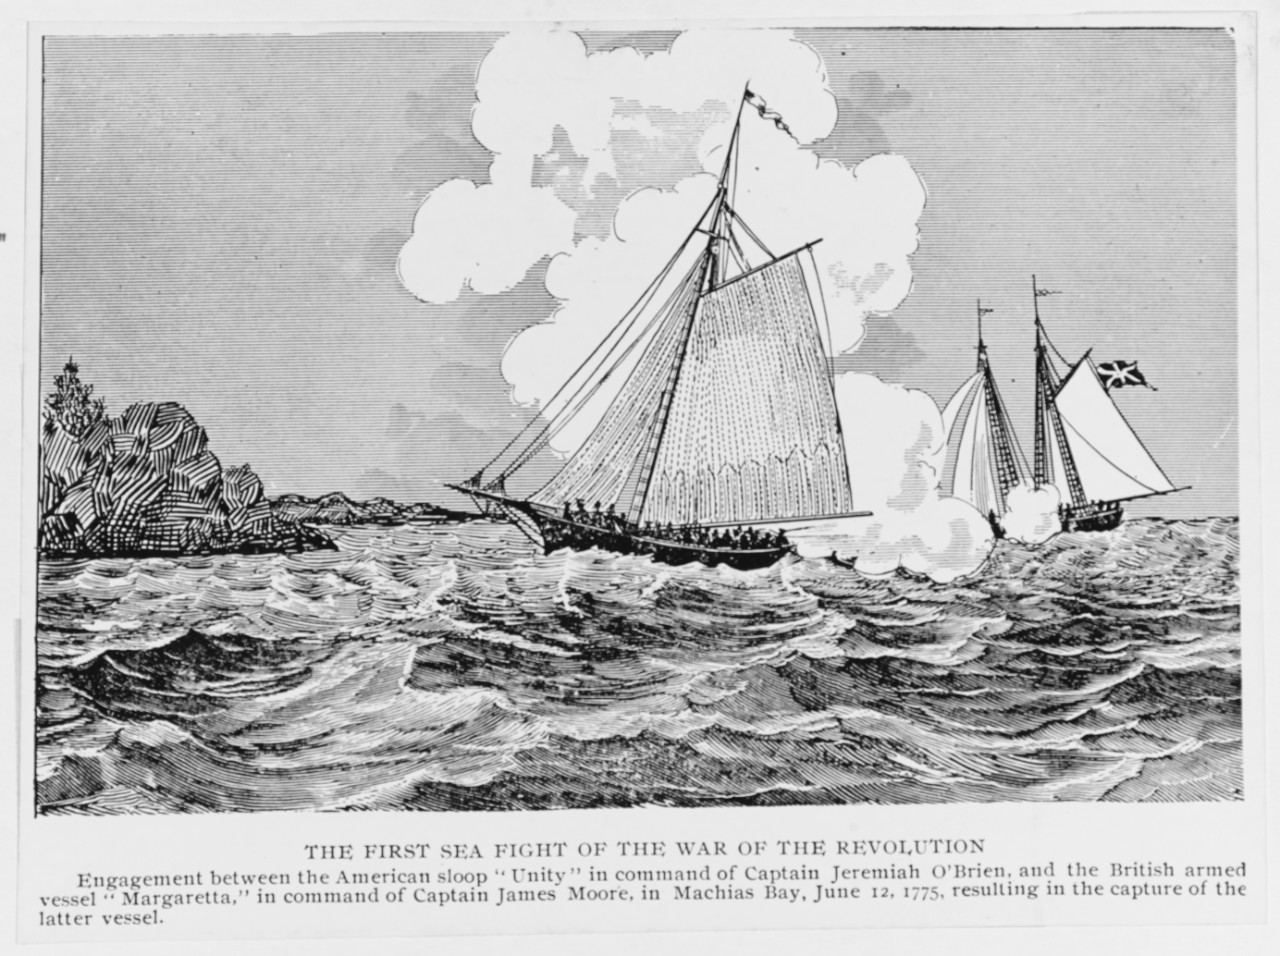 Capture of HMS MARGARETTA, 12 June 1775